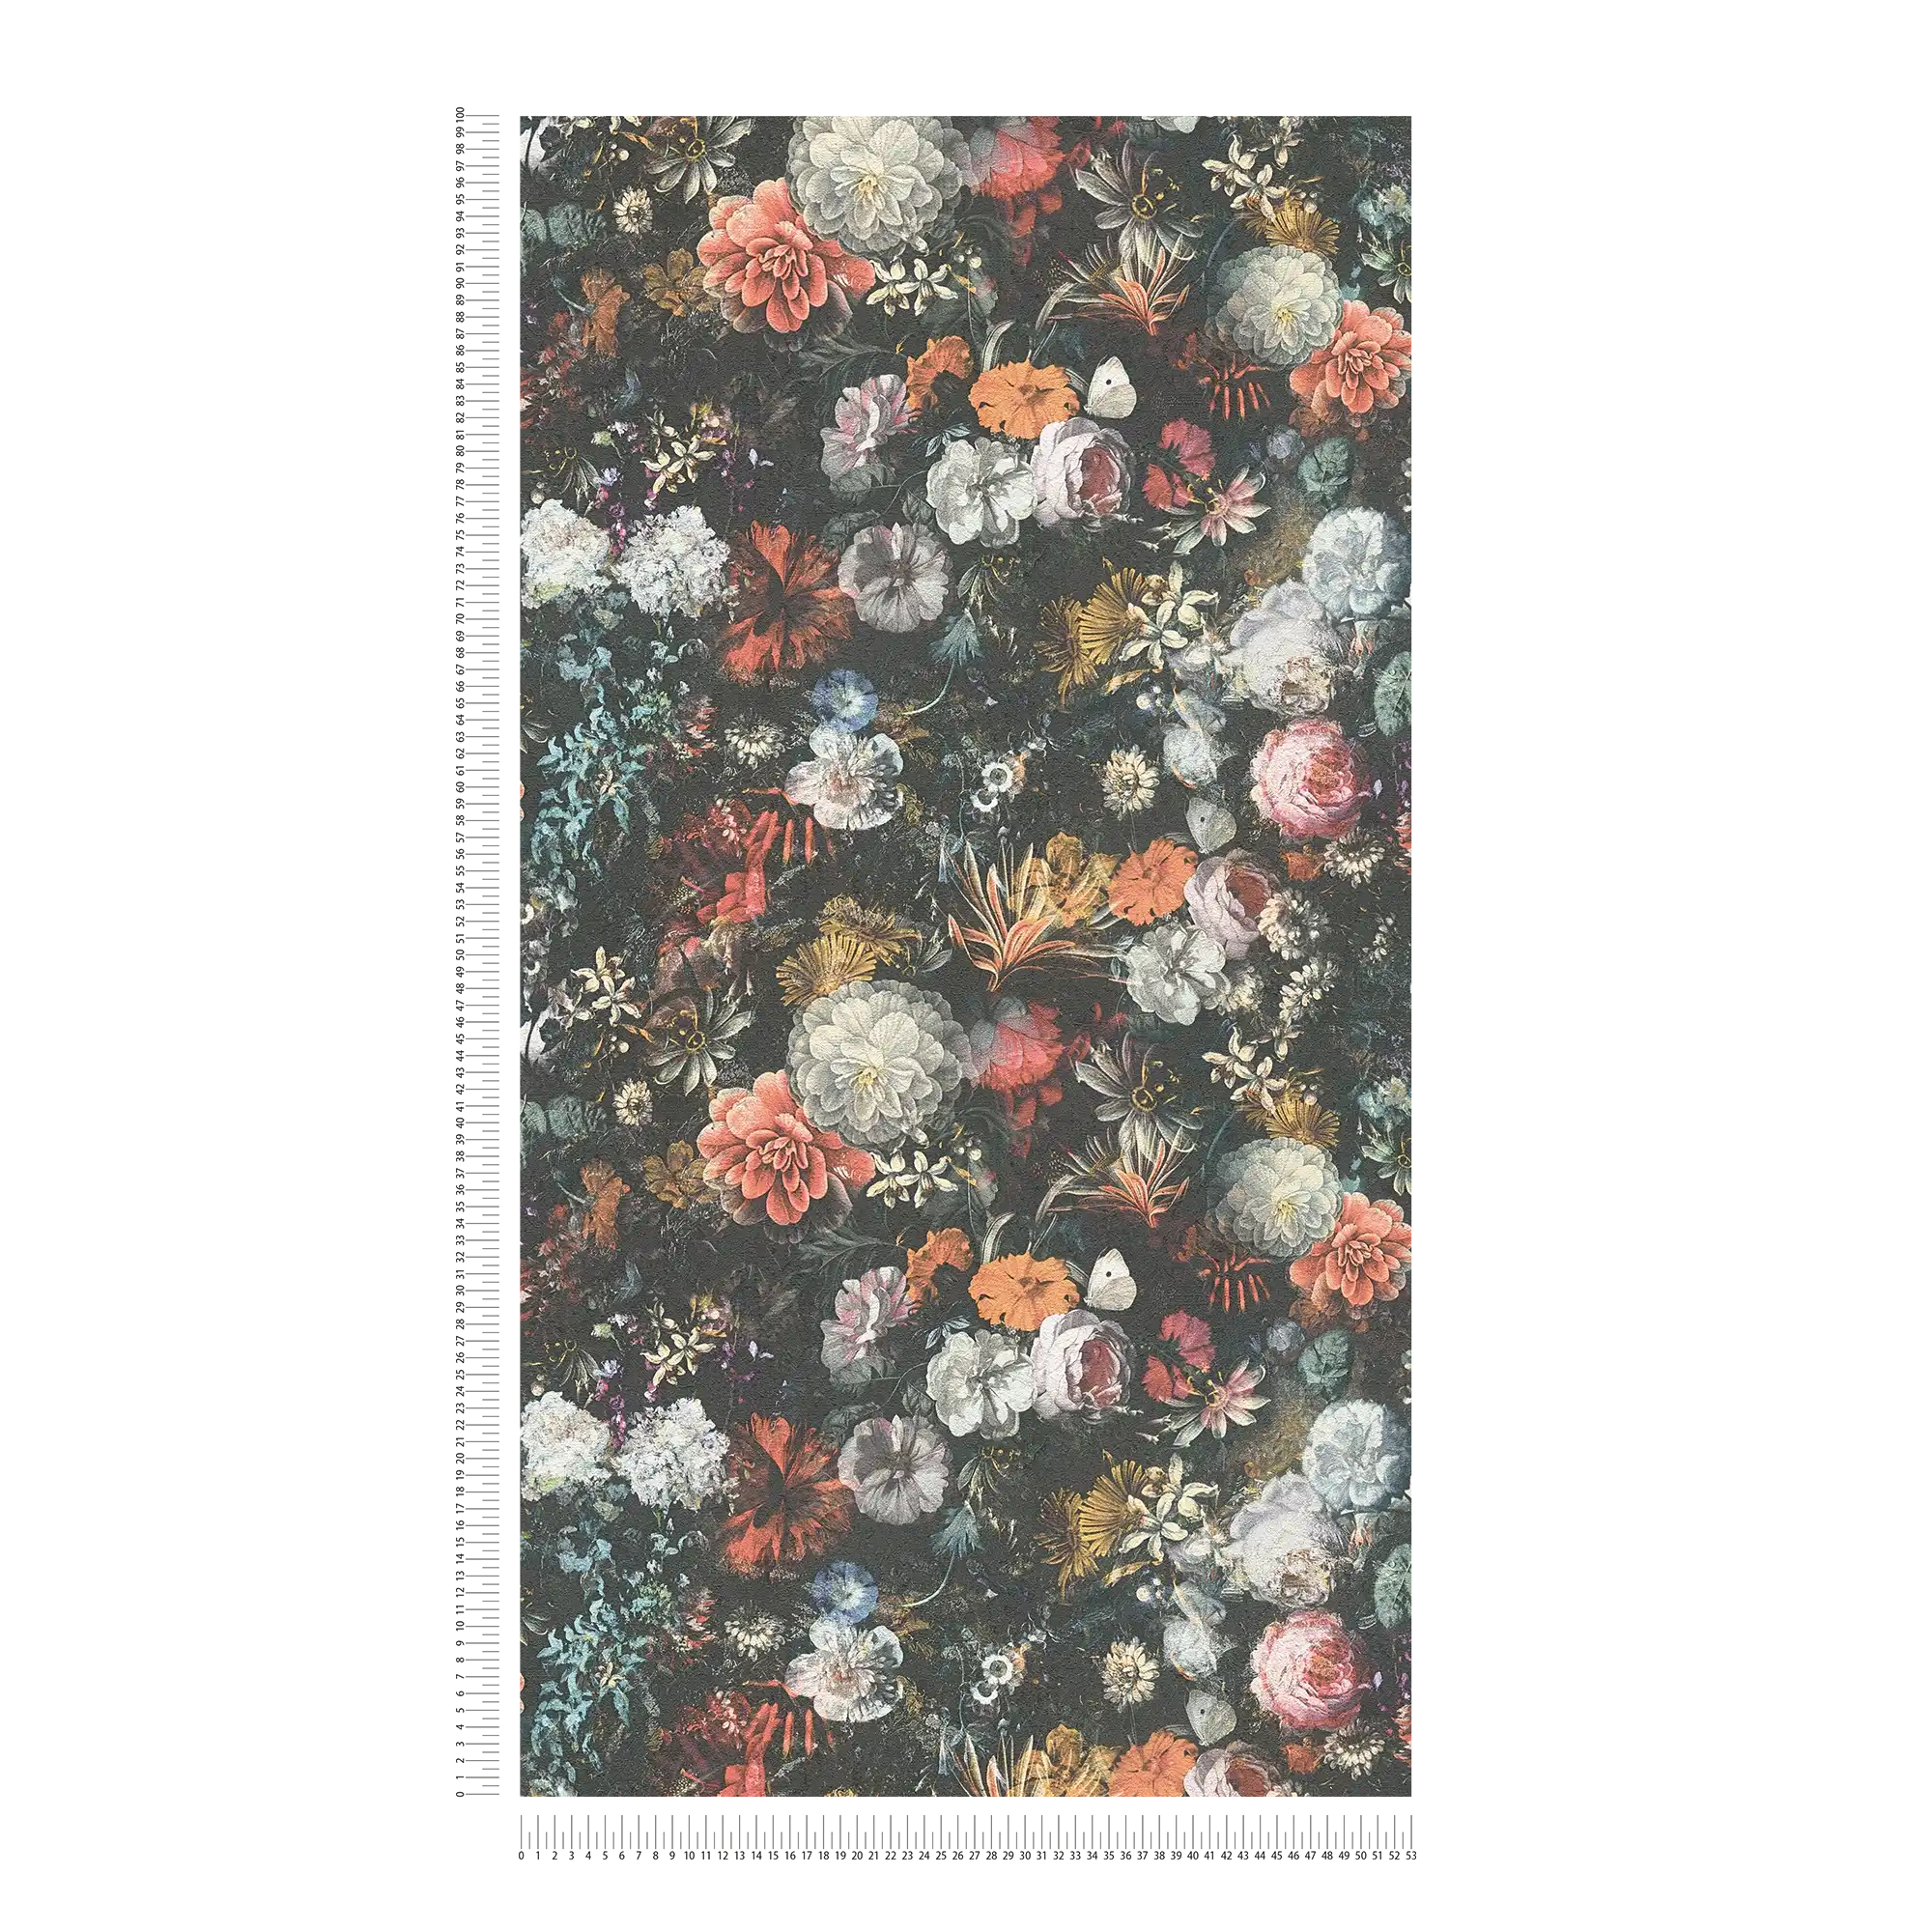             Blumen Tapete Vintage Design mit Rosen – Bunt, Grau, Orange
        